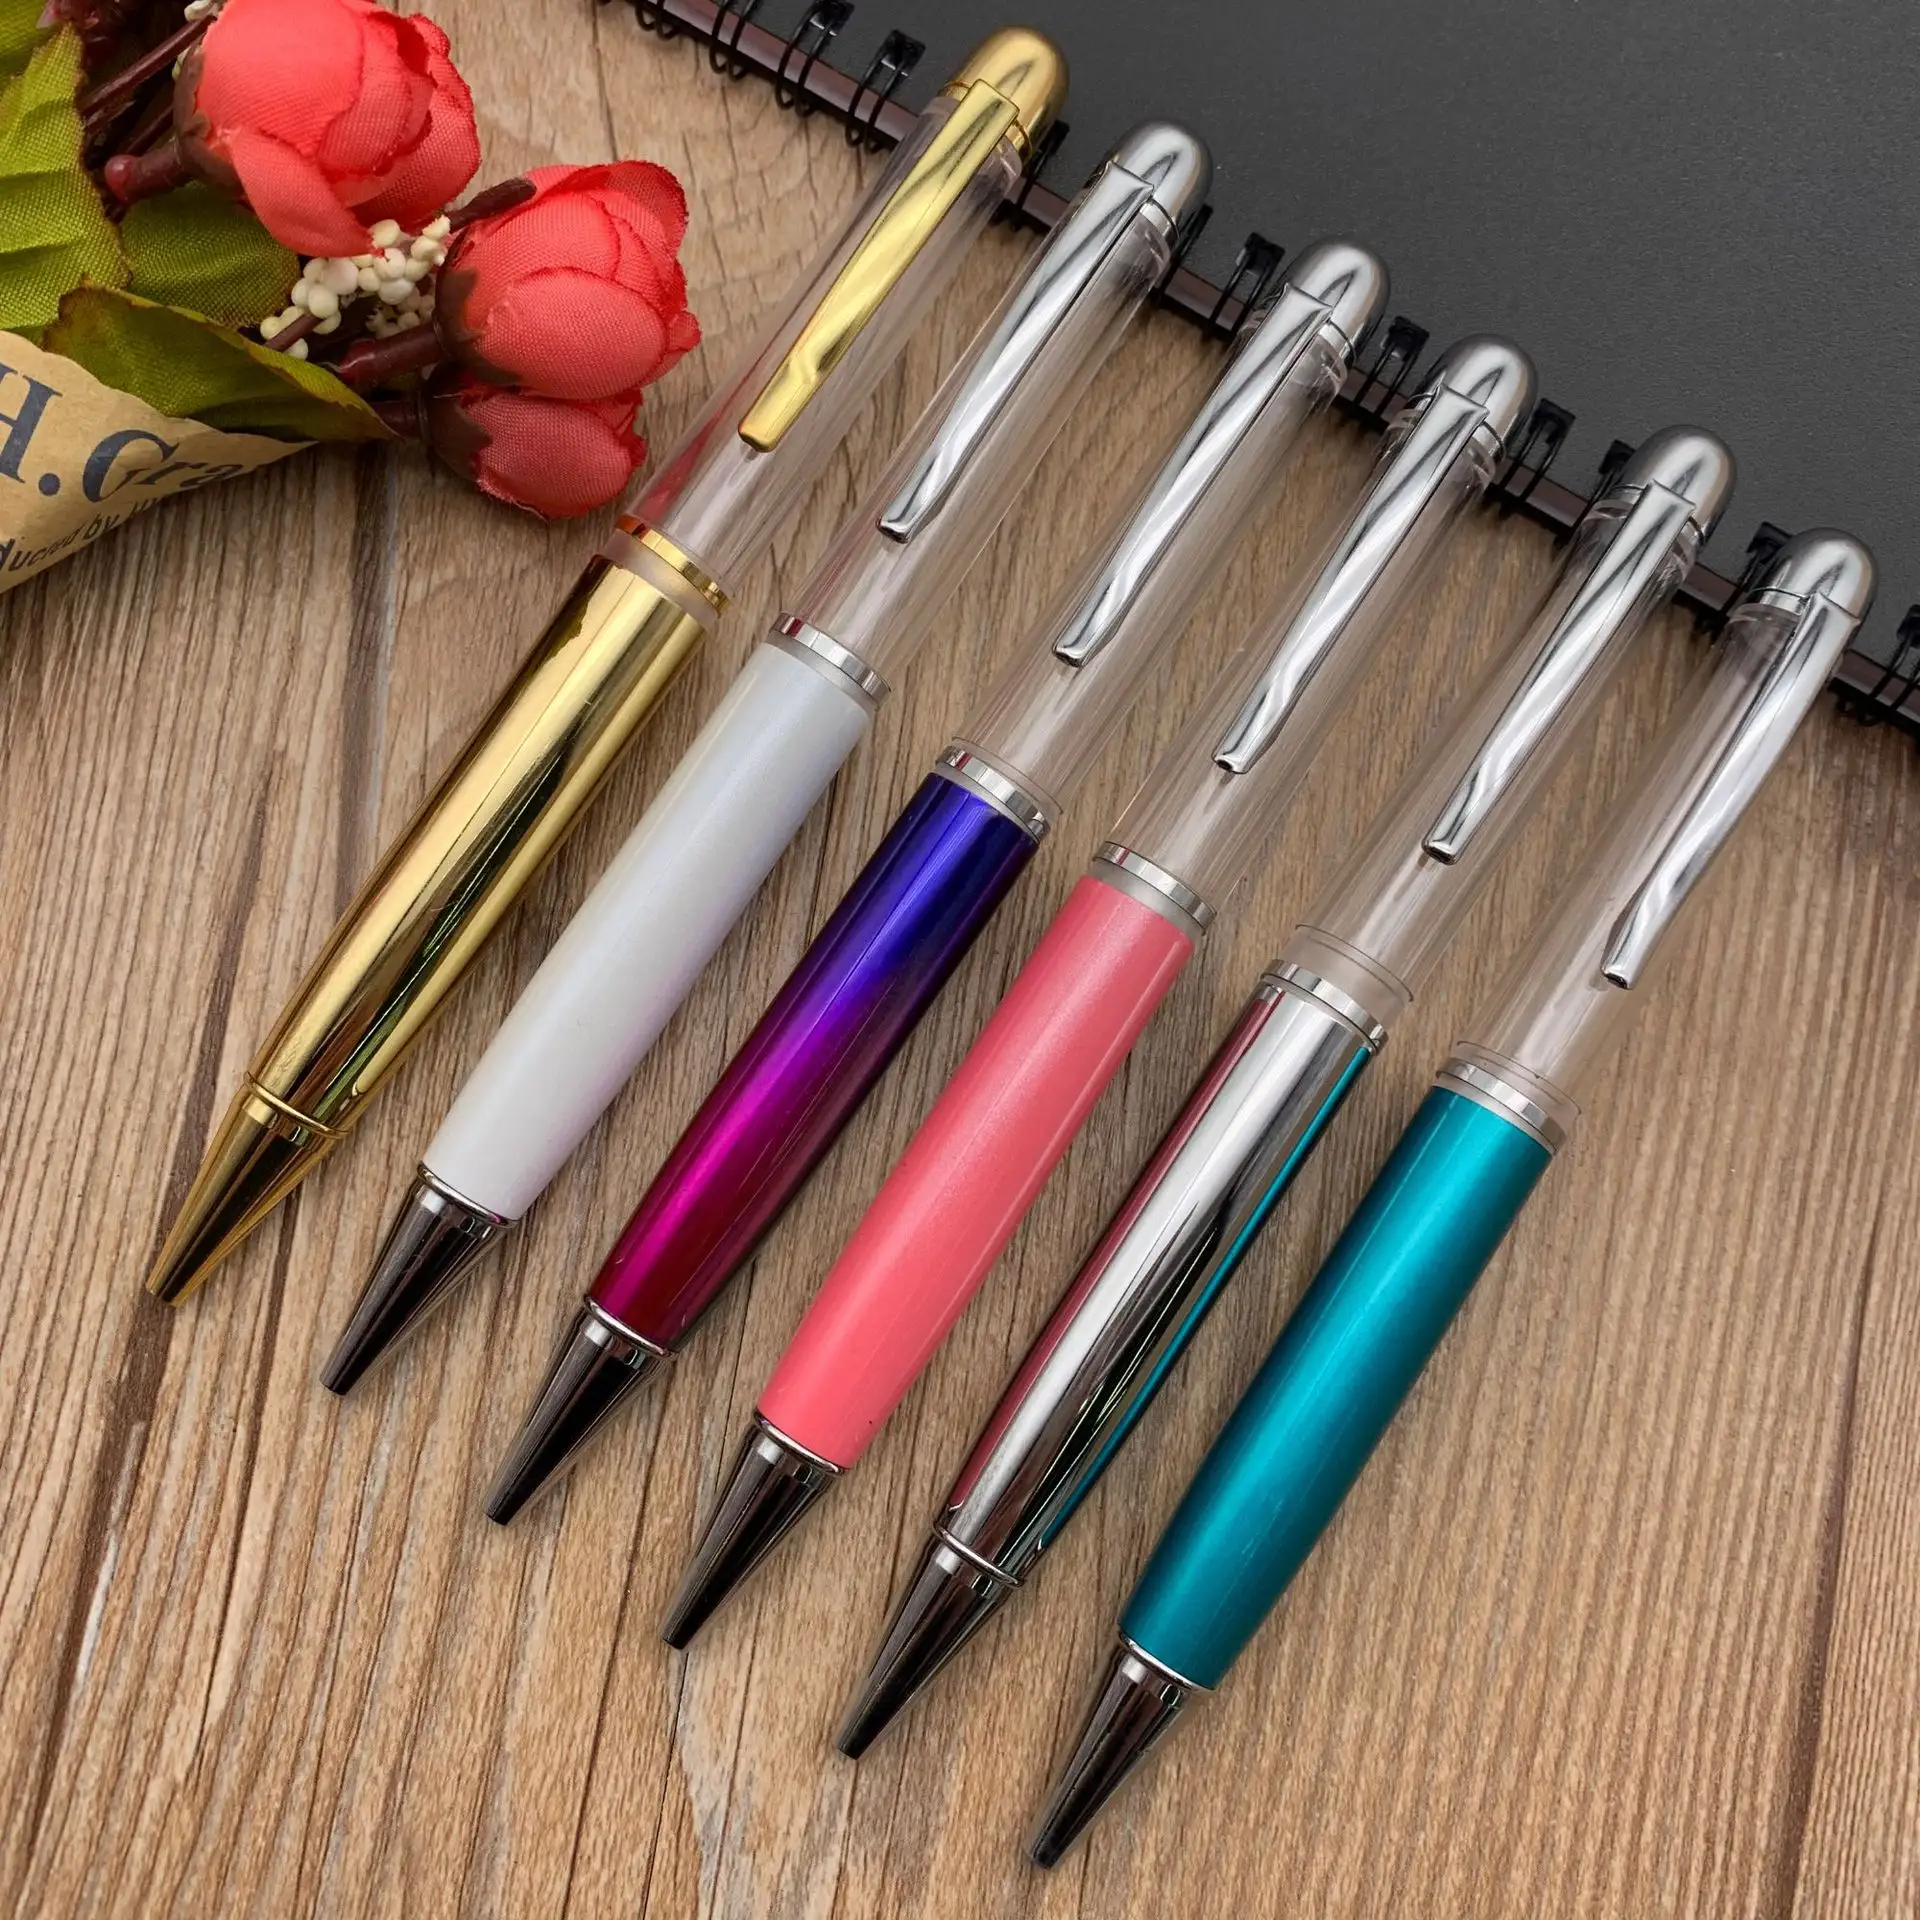 מוצר חדש שומן חידוש ריק צינור ריק DIY עט למלא נוזל צף גליטר העשבייה חול טובעני גדול יותר עבה DIY עט